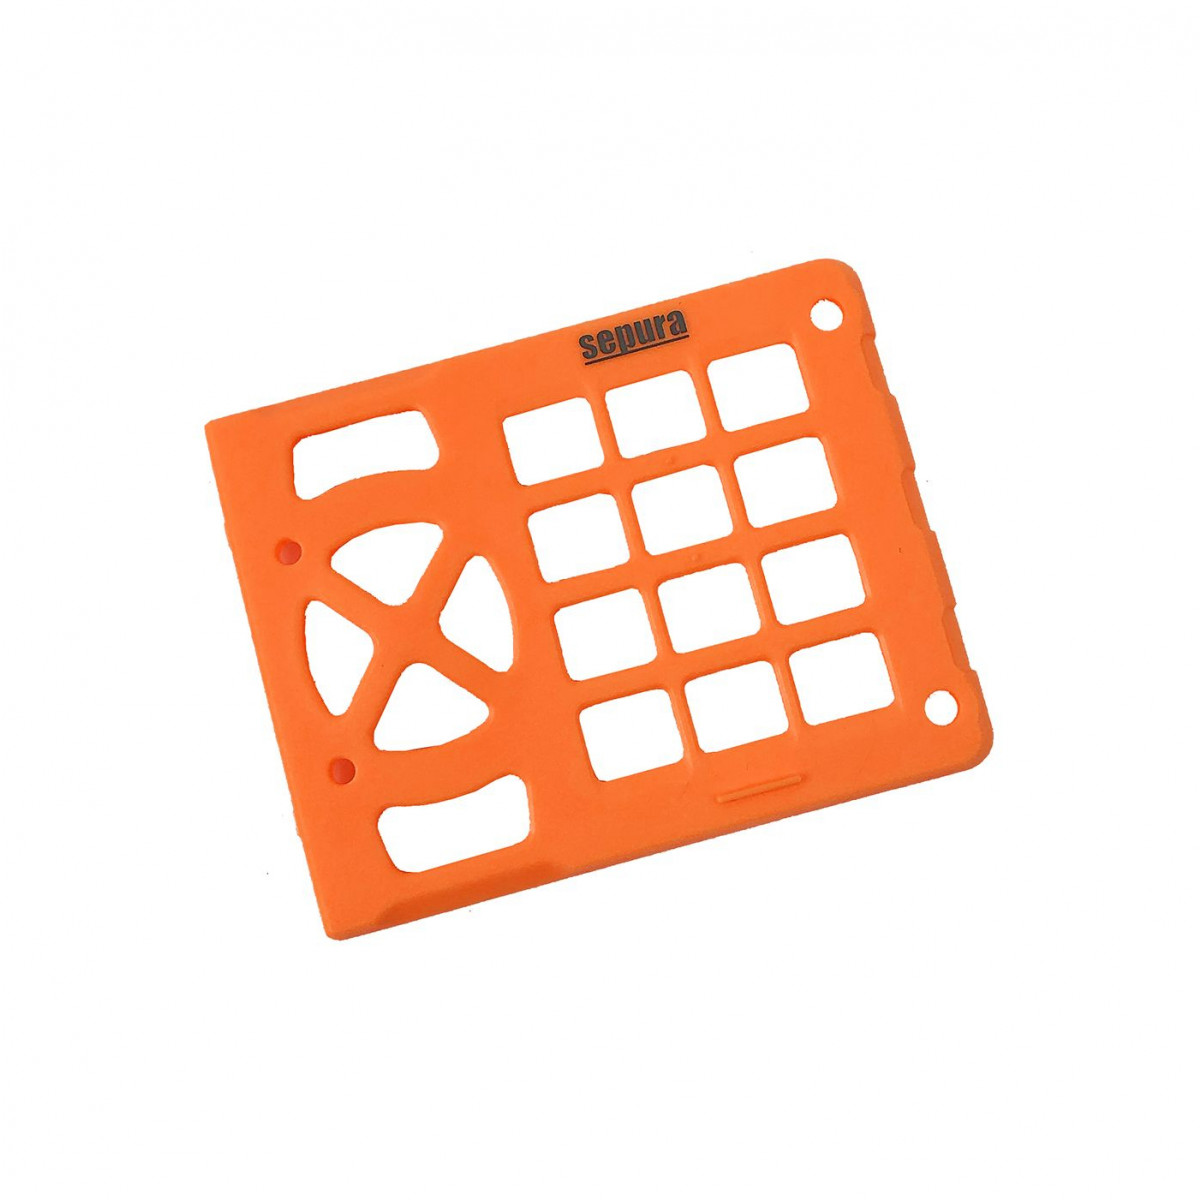 SEPURA keyboard frame orange, for SCC3 700-00827 SINGLE